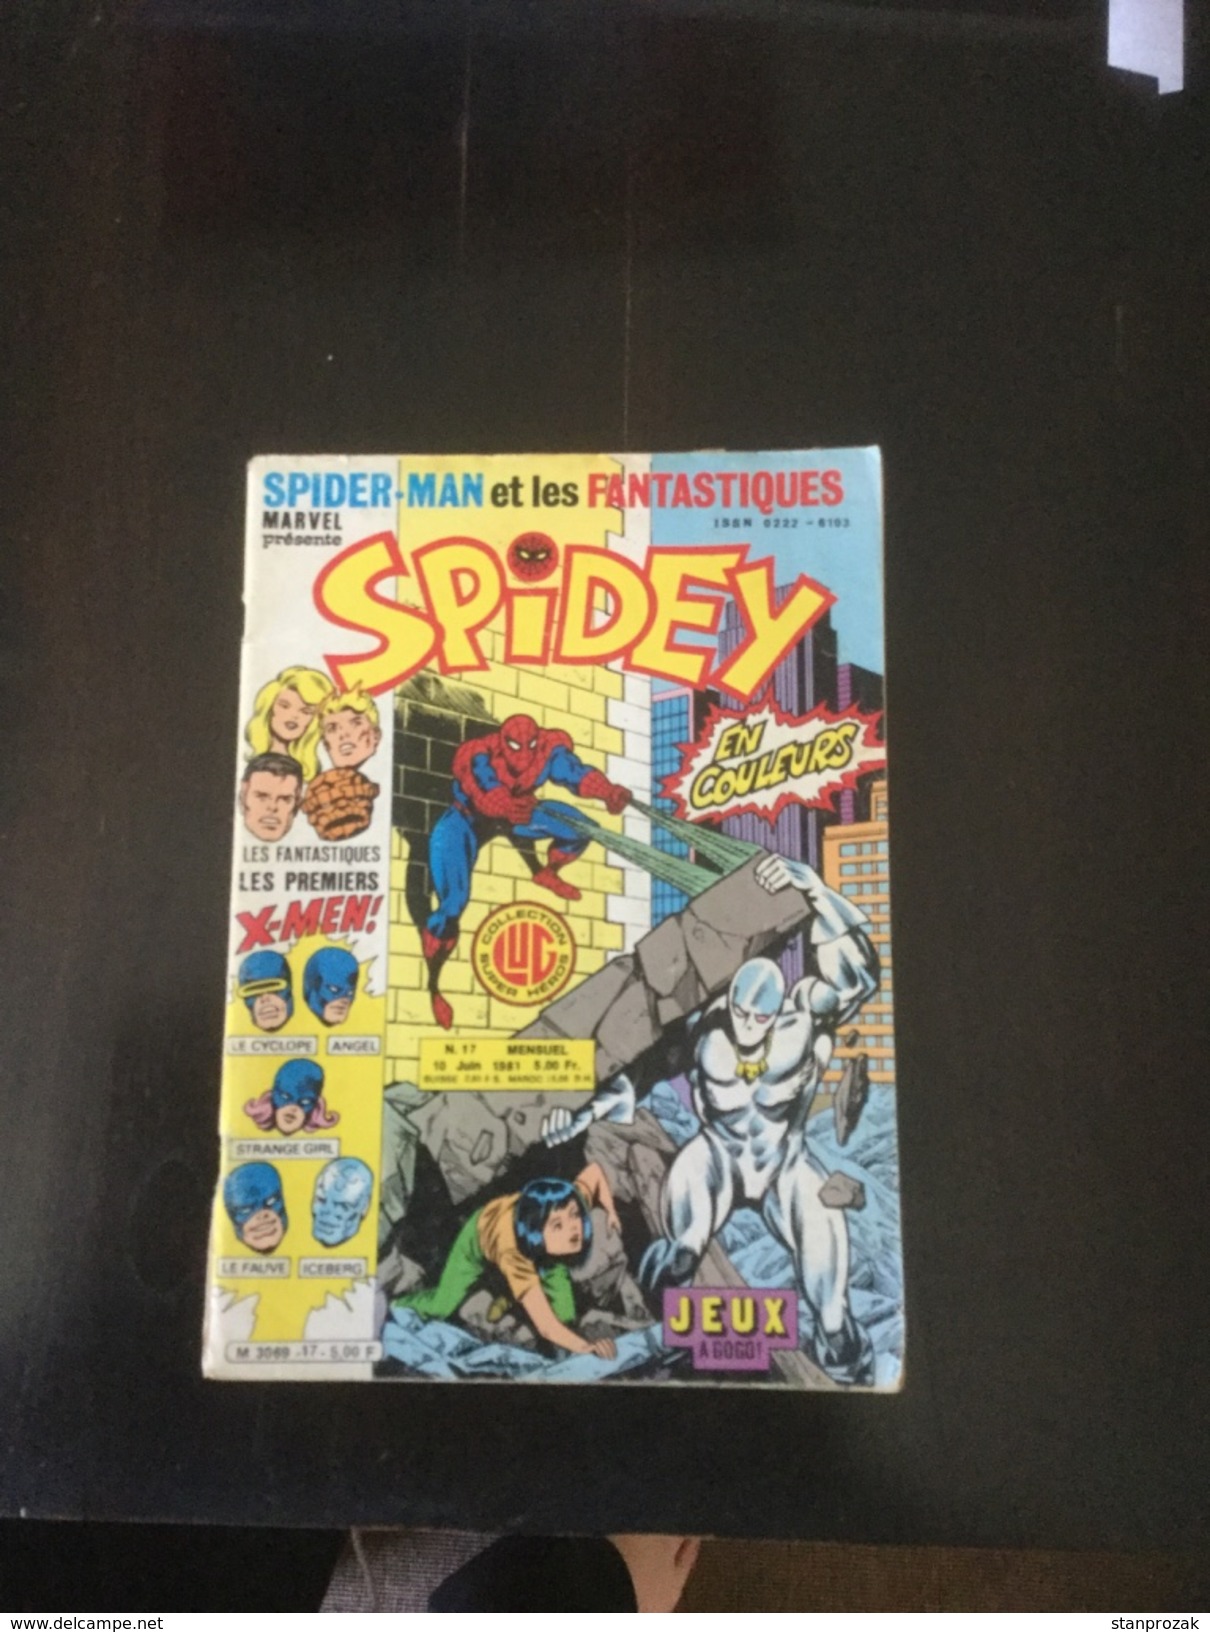 Spider 17 - Spidey